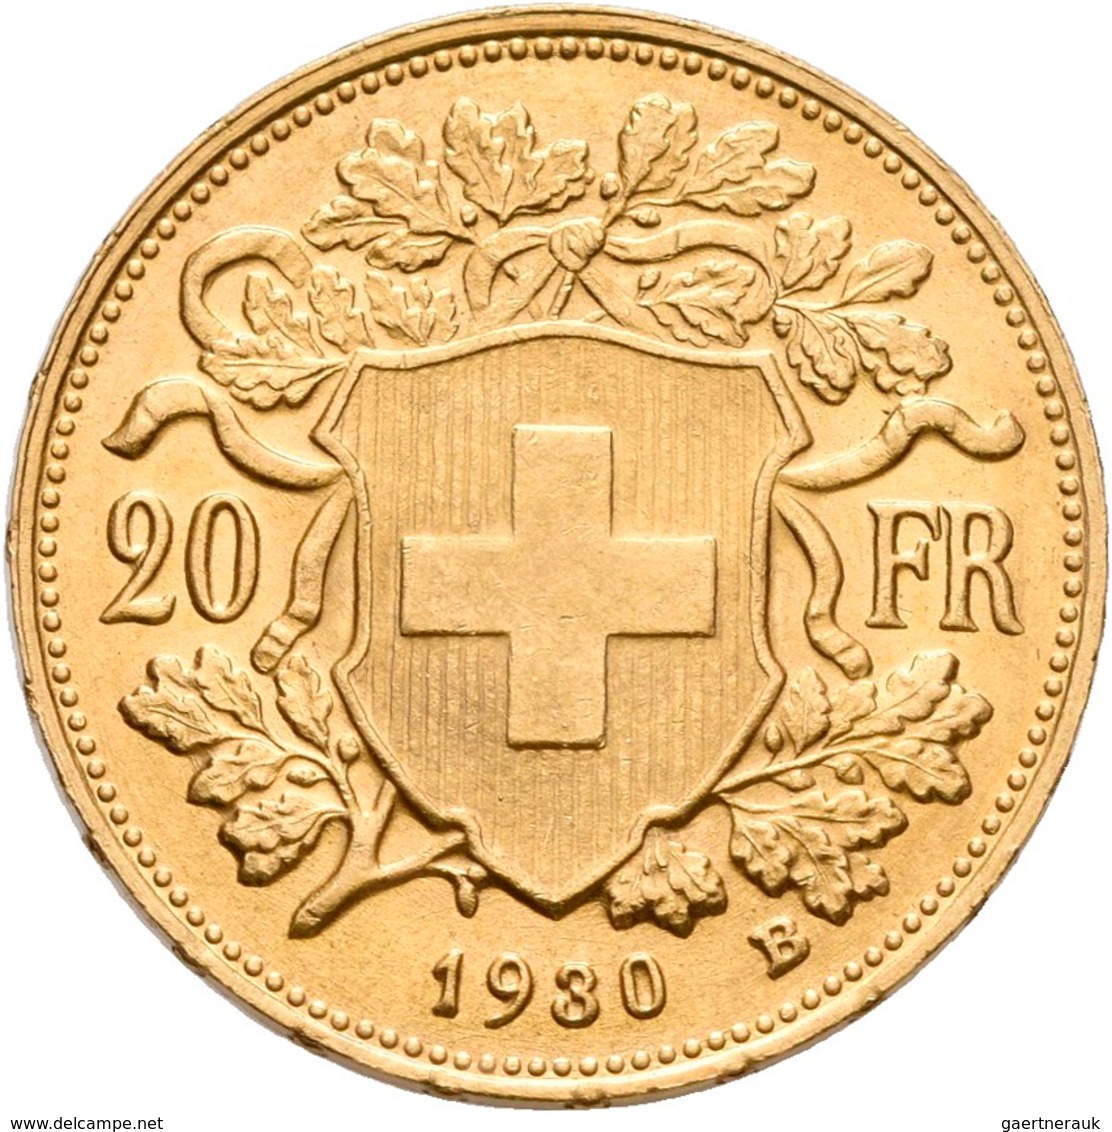 Schweiz - Anlagegold: Lot 5 Goldmünzen: 1 x 10 Franken 1922; 2 x 20 Franken 1889 + 1896 (Helvetia) s